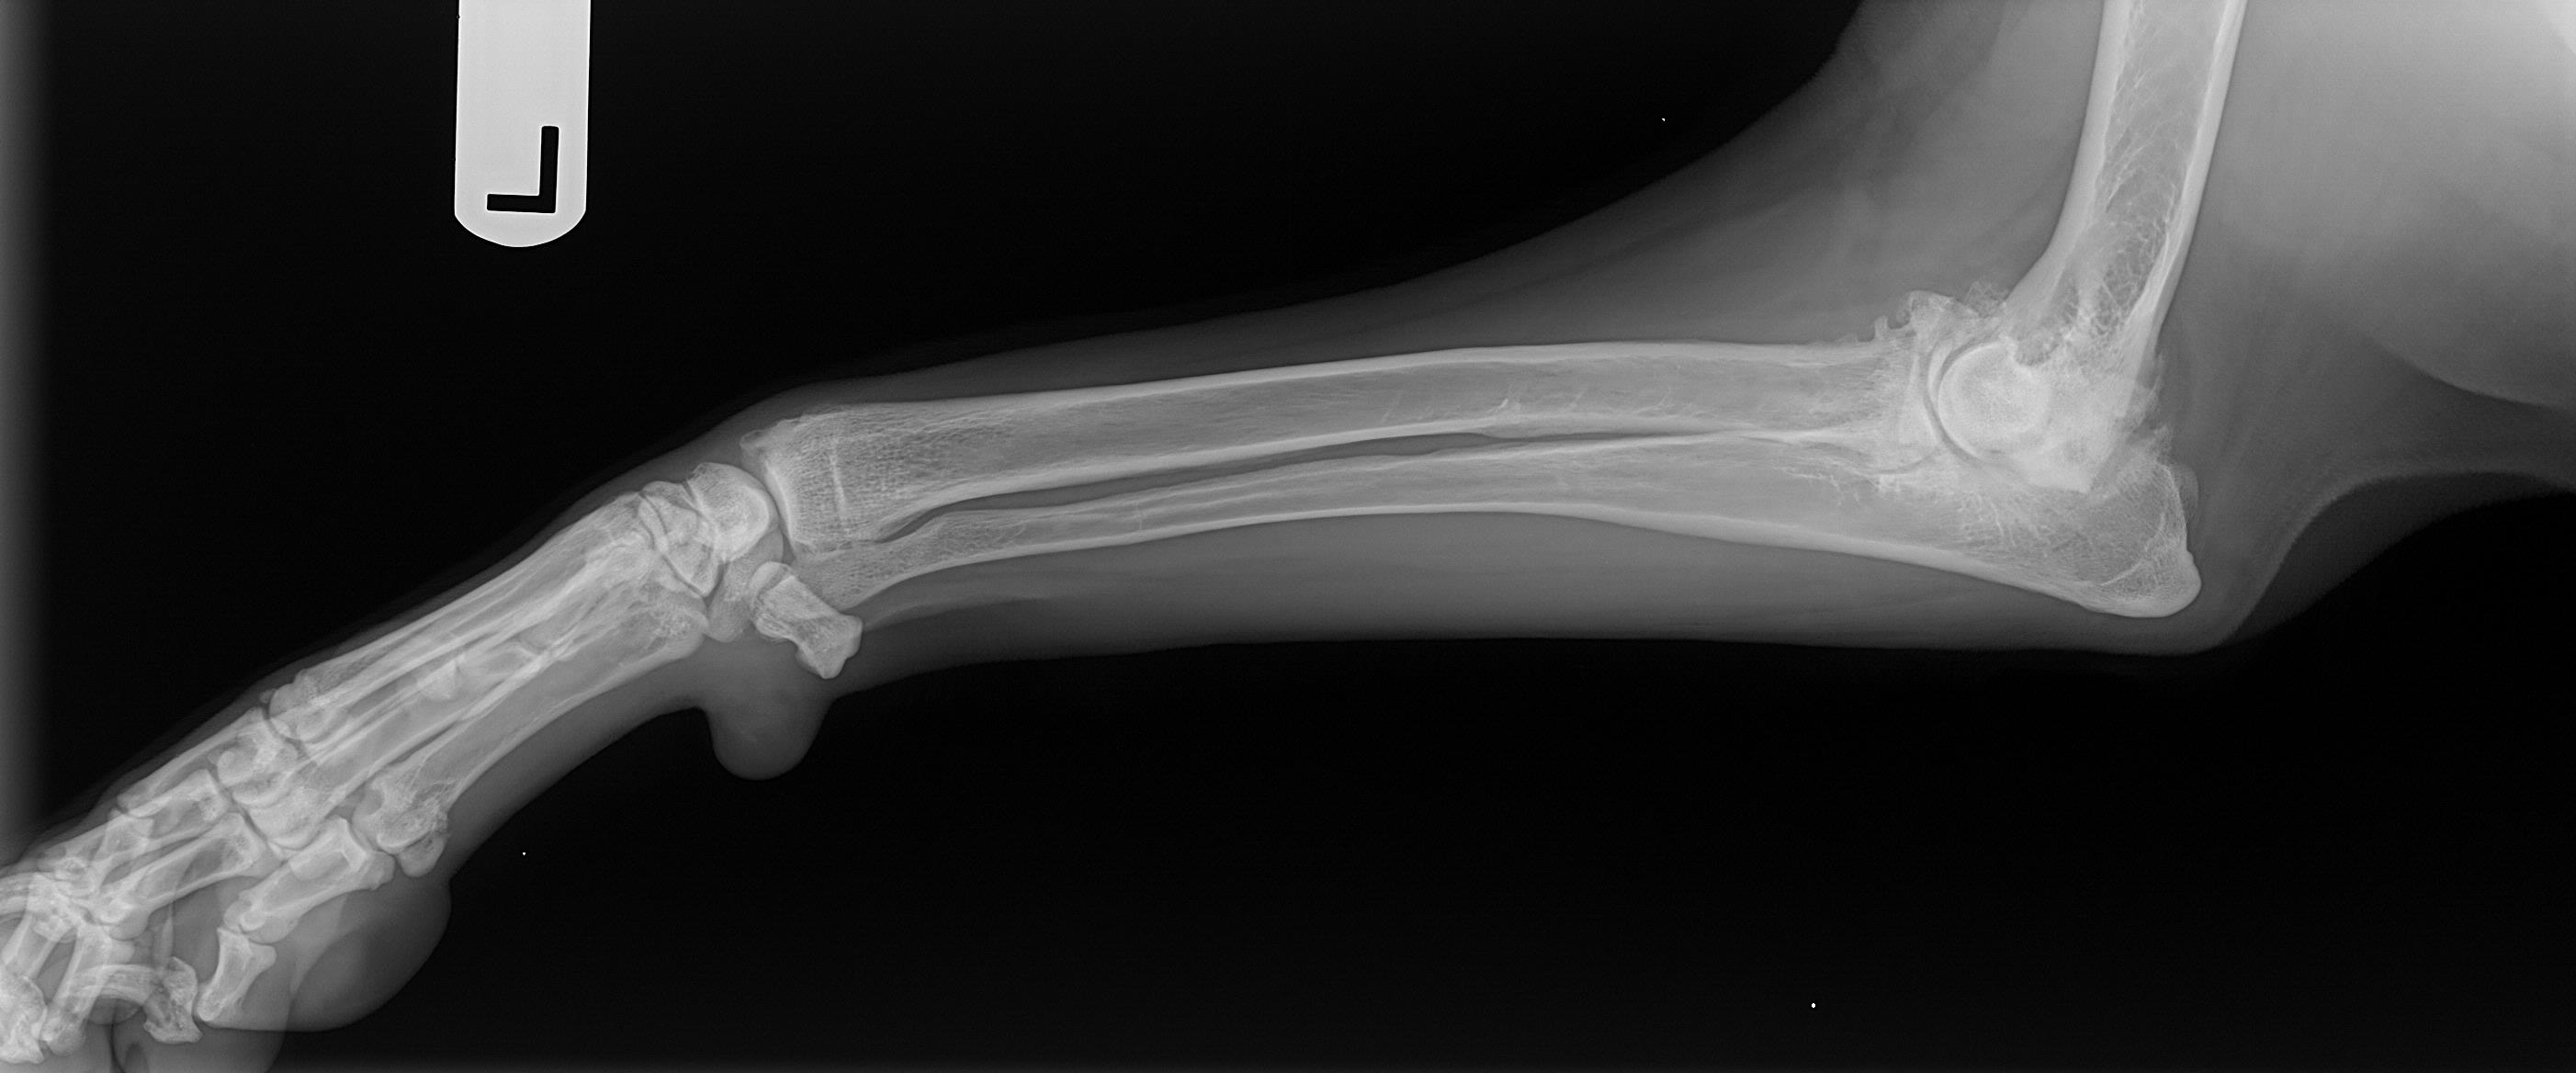 Canine Elbow Arthritis